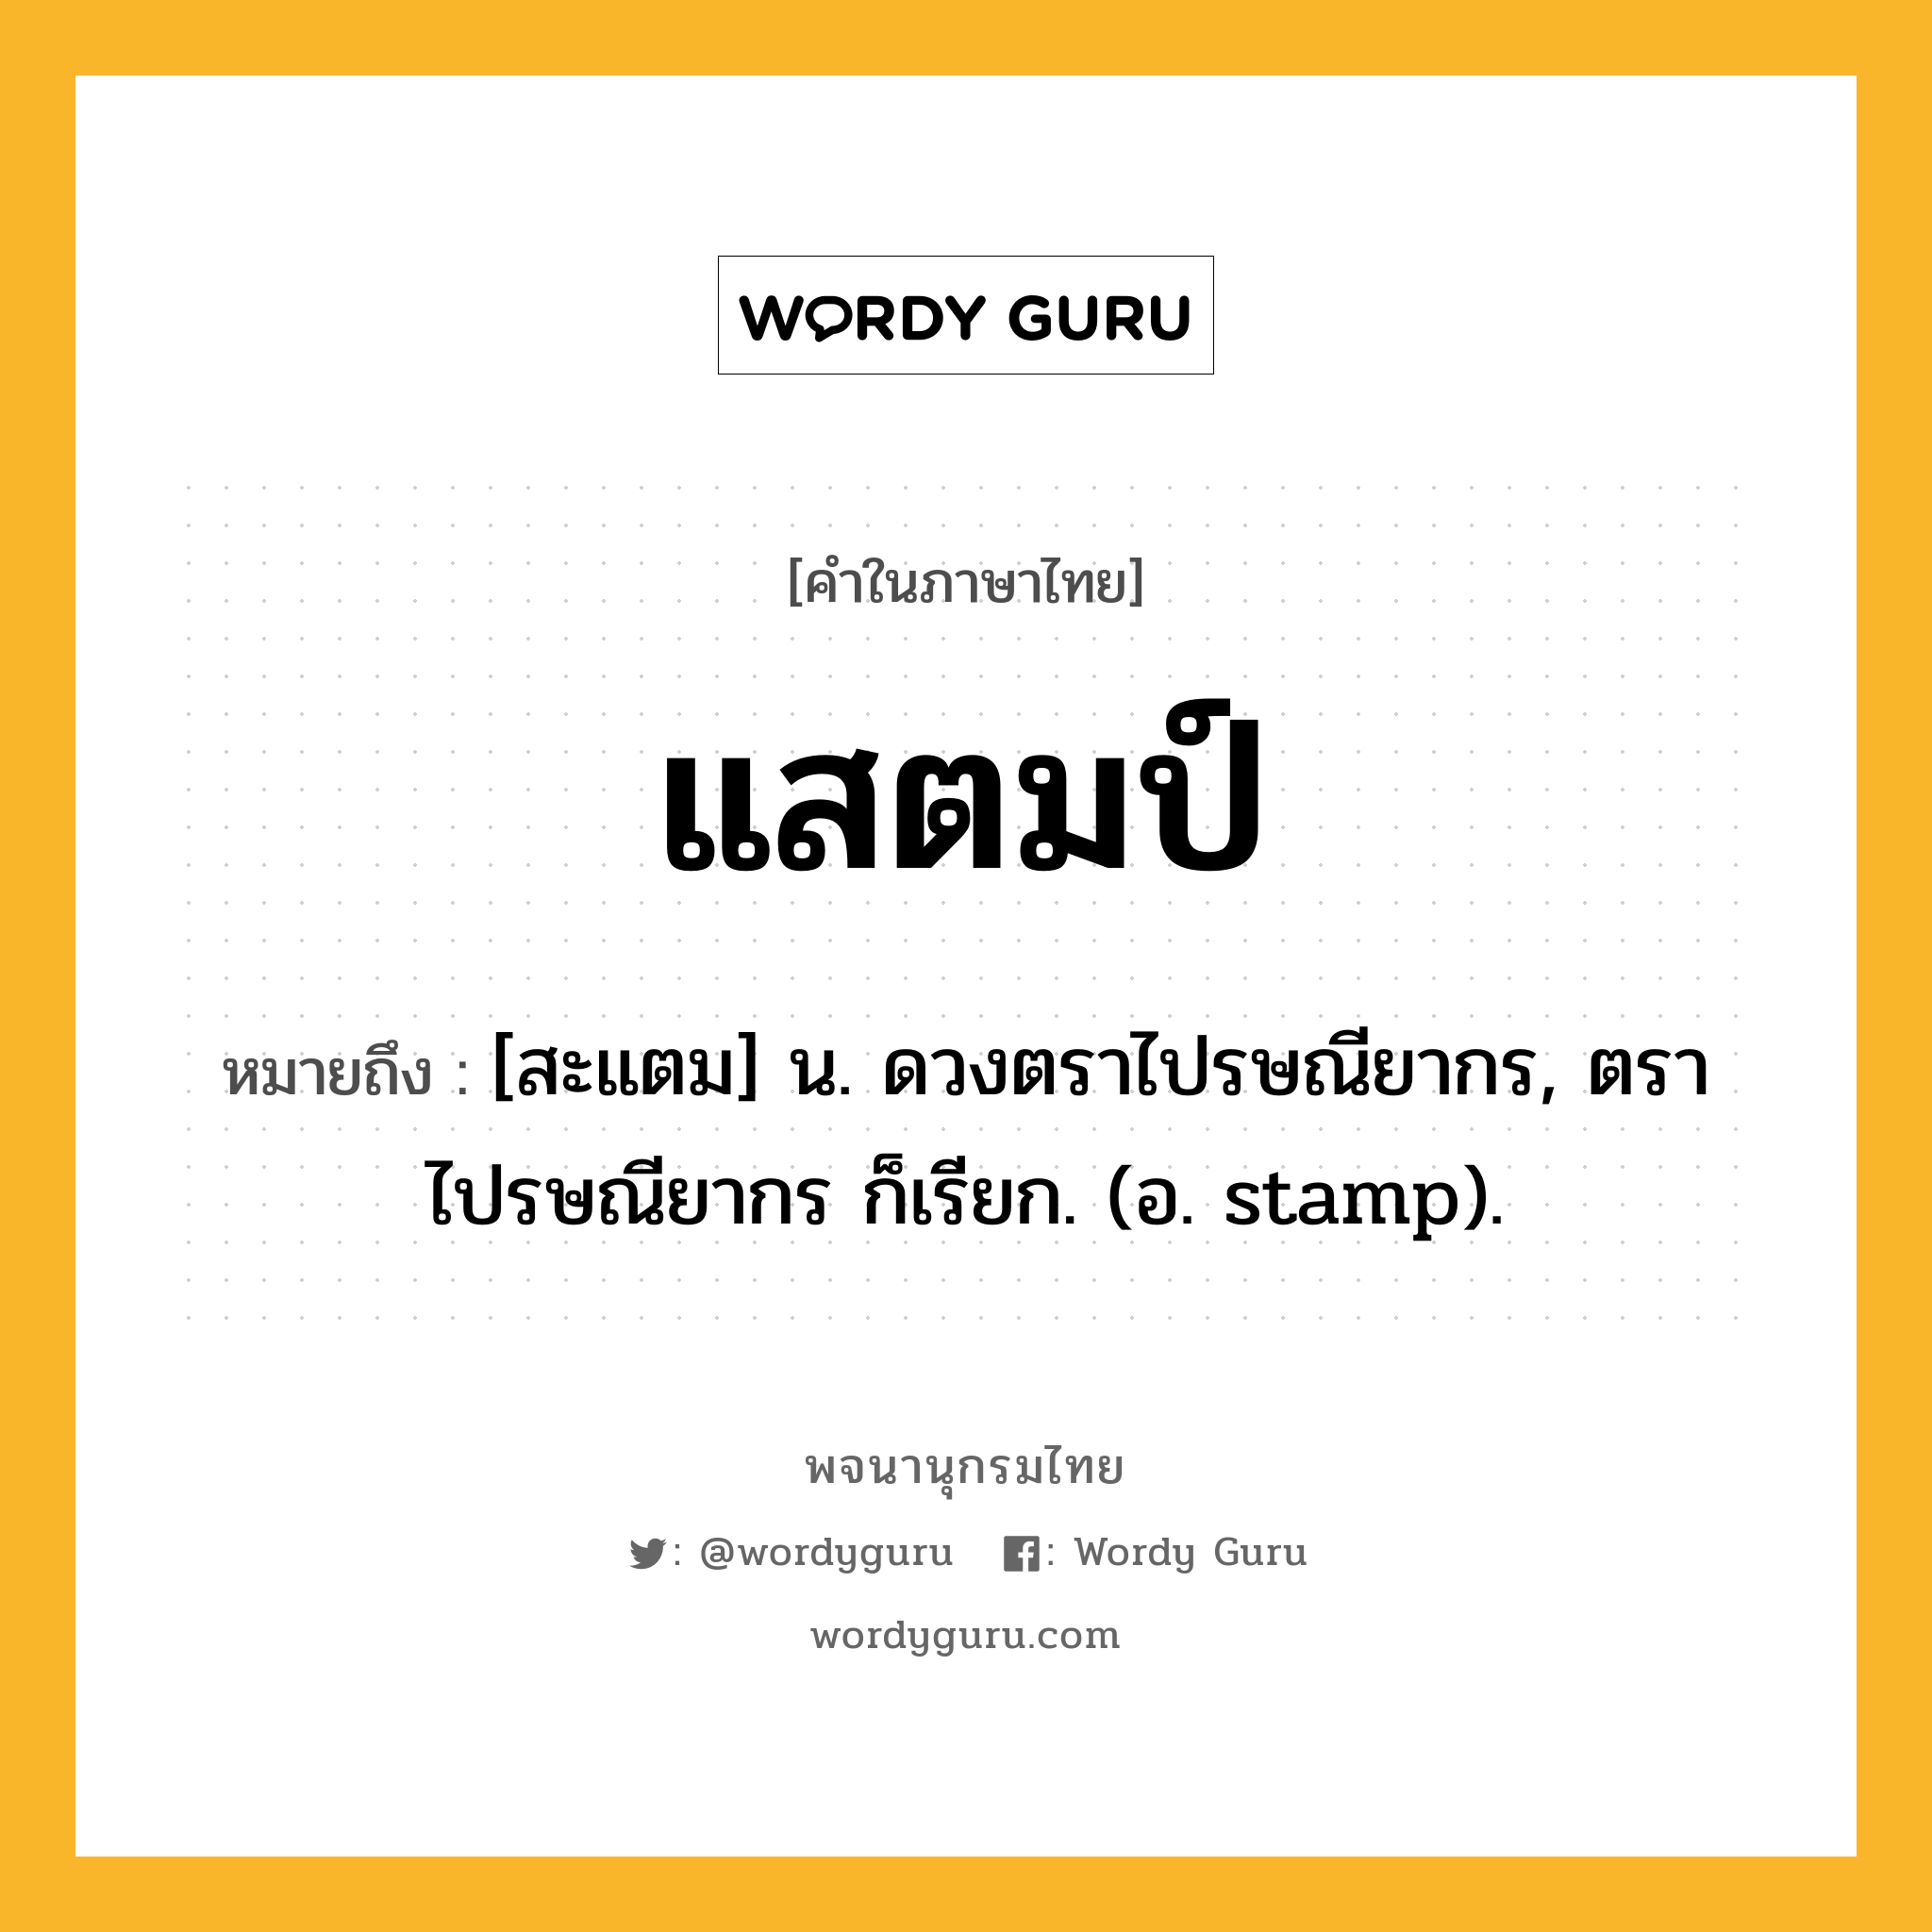 แสตมป์ หมายถึงอะไร?, คำในภาษาไทย แสตมป์ หมายถึง [สะแตม] น. ดวงตราไปรษณียากร, ตราไปรษณียากร ก็เรียก. (อ. stamp).